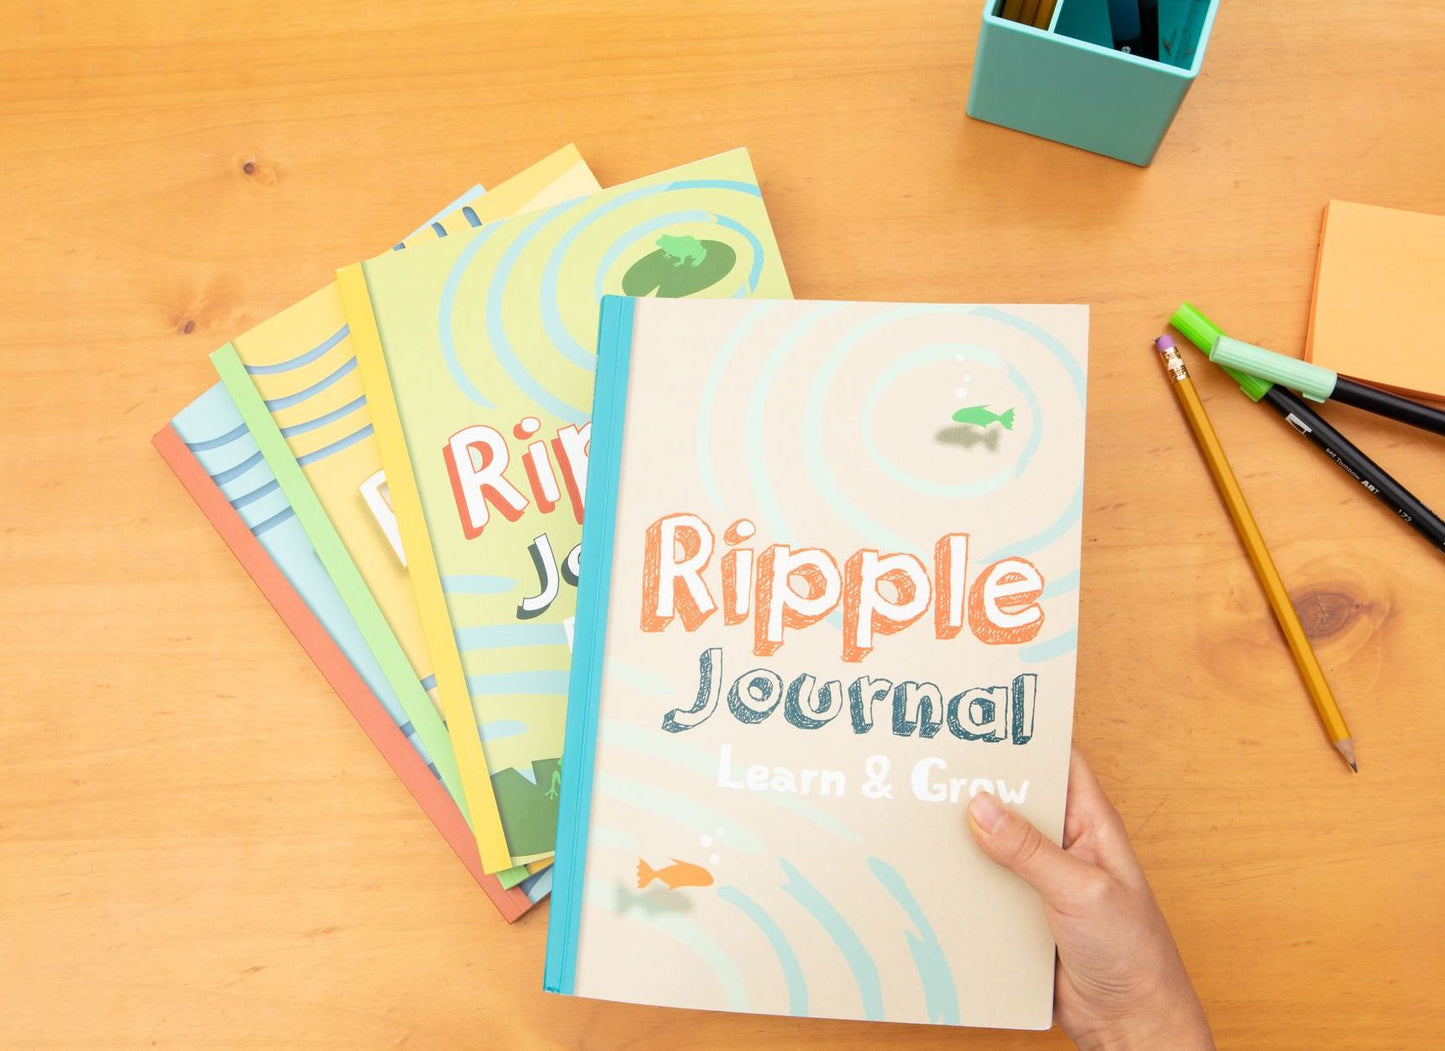 Ripple Journal Learn & Grow